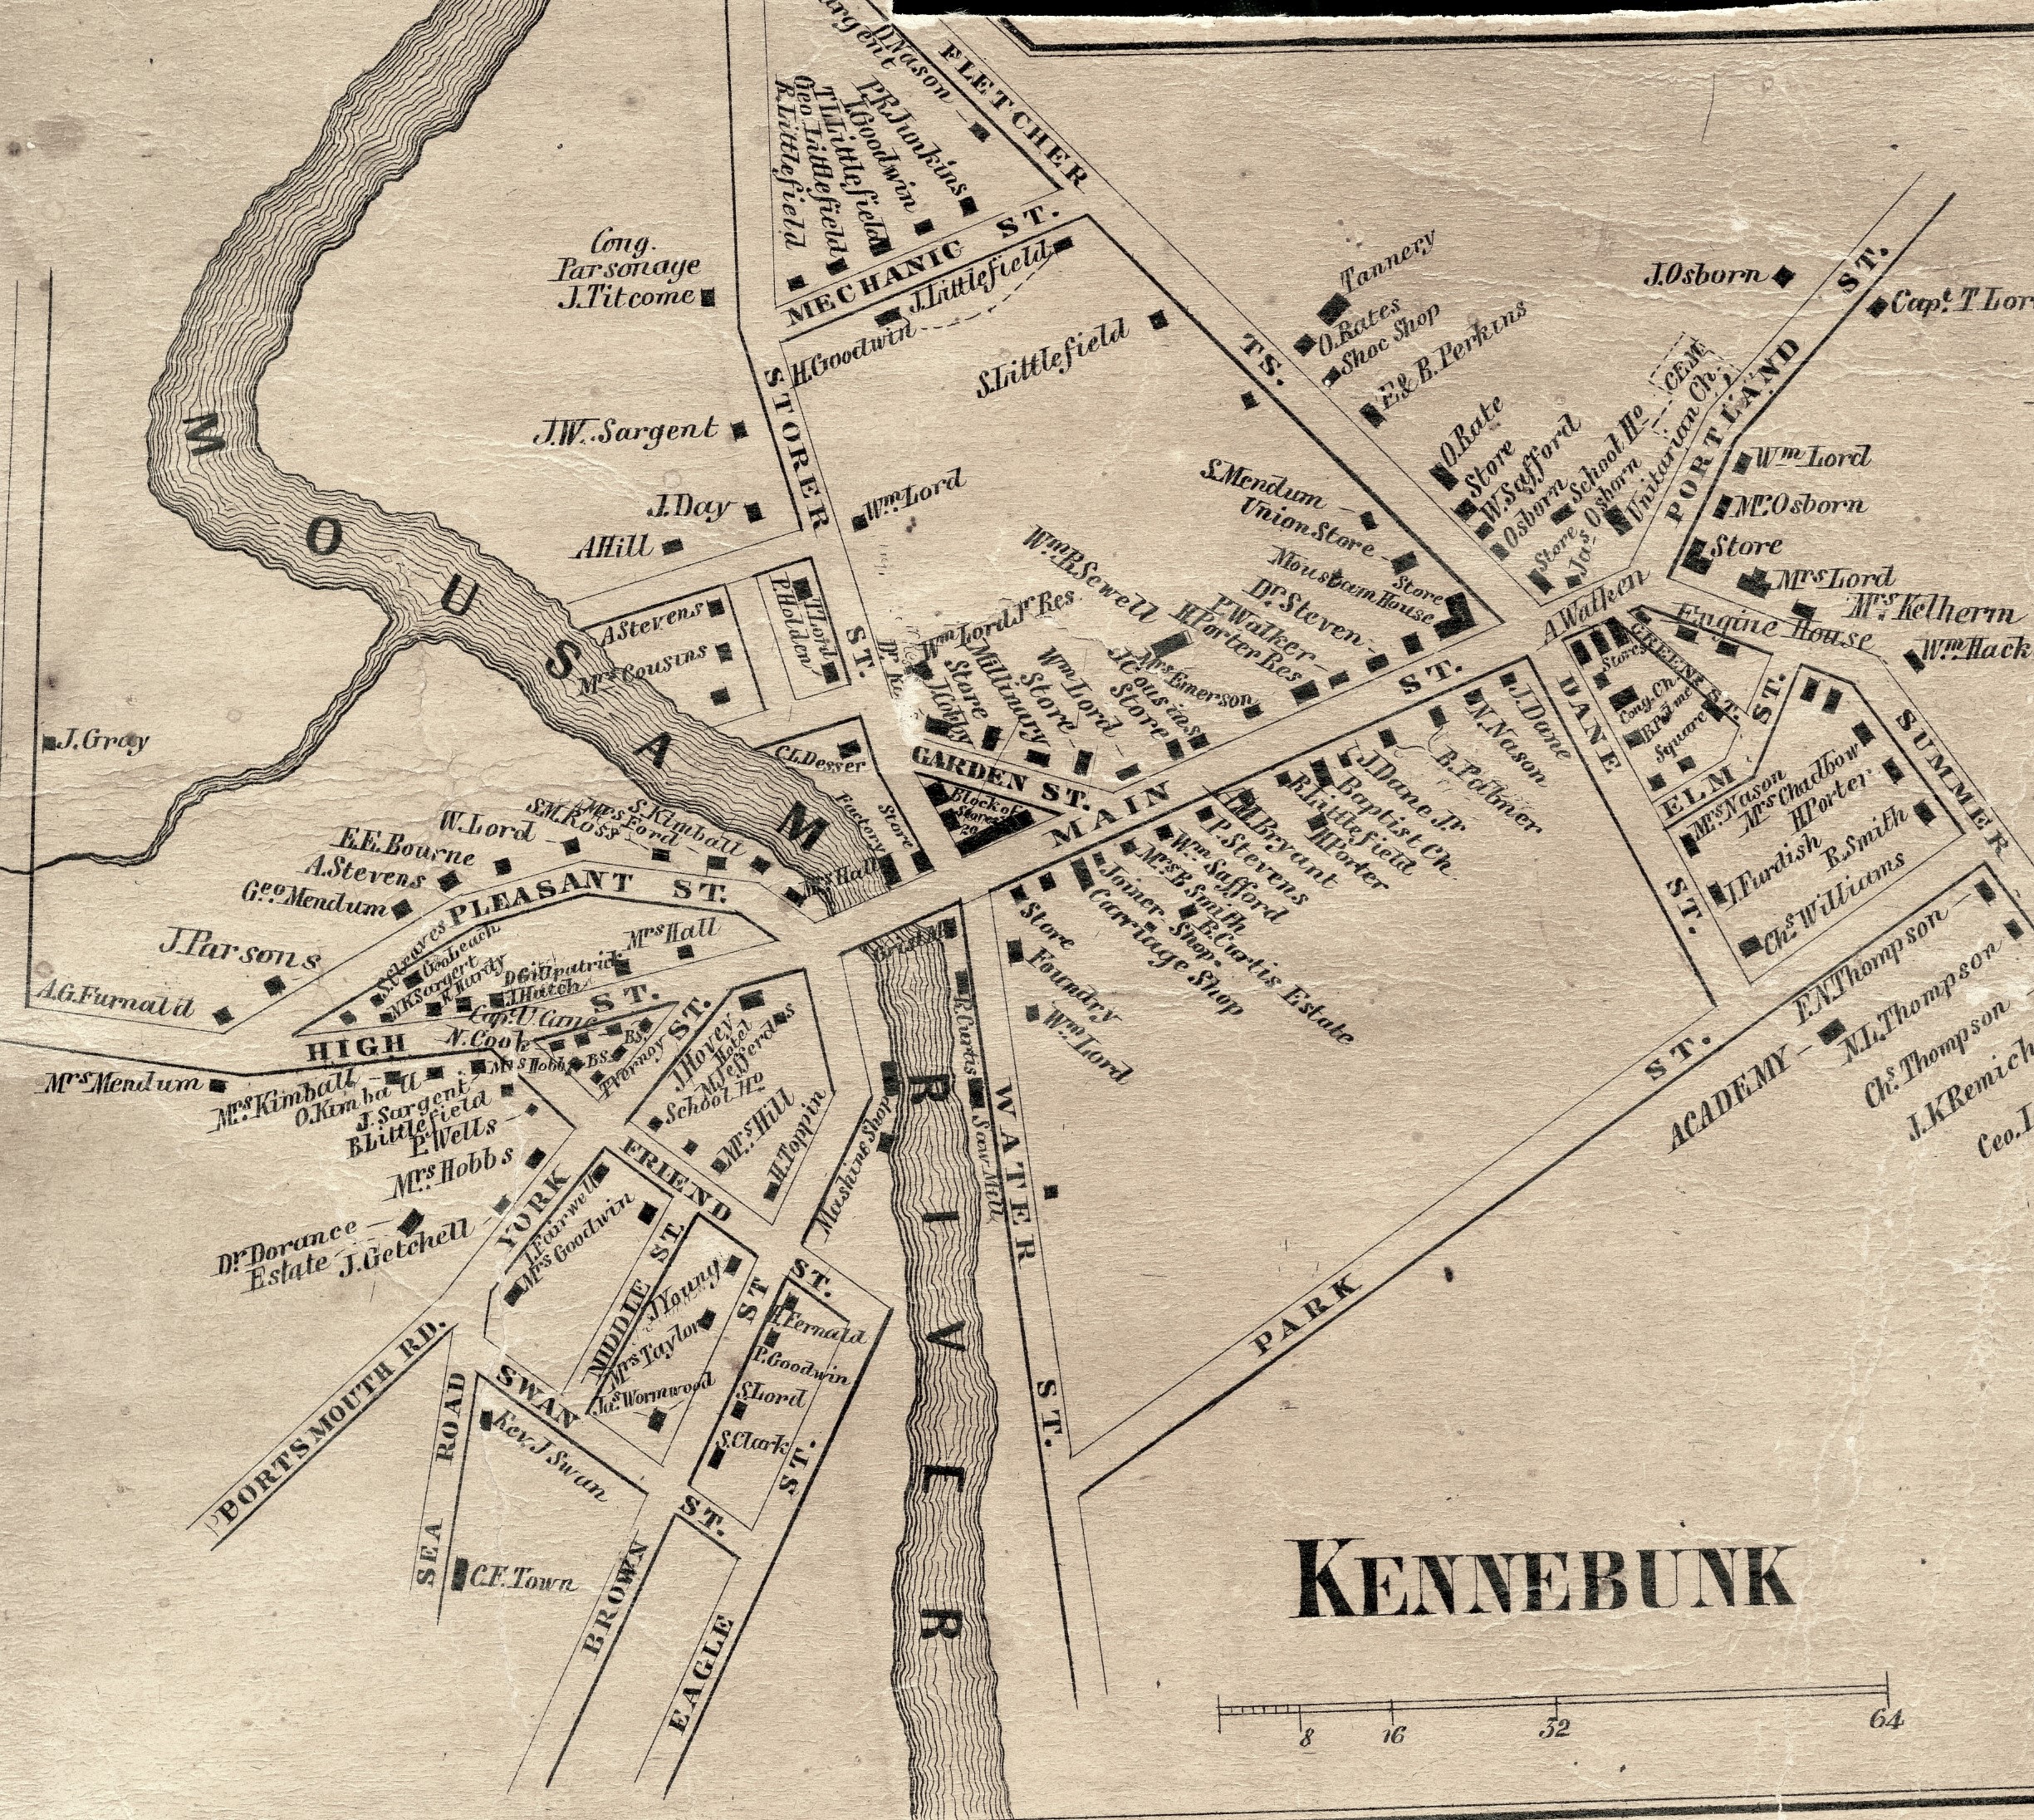 Kennebunk, 1856